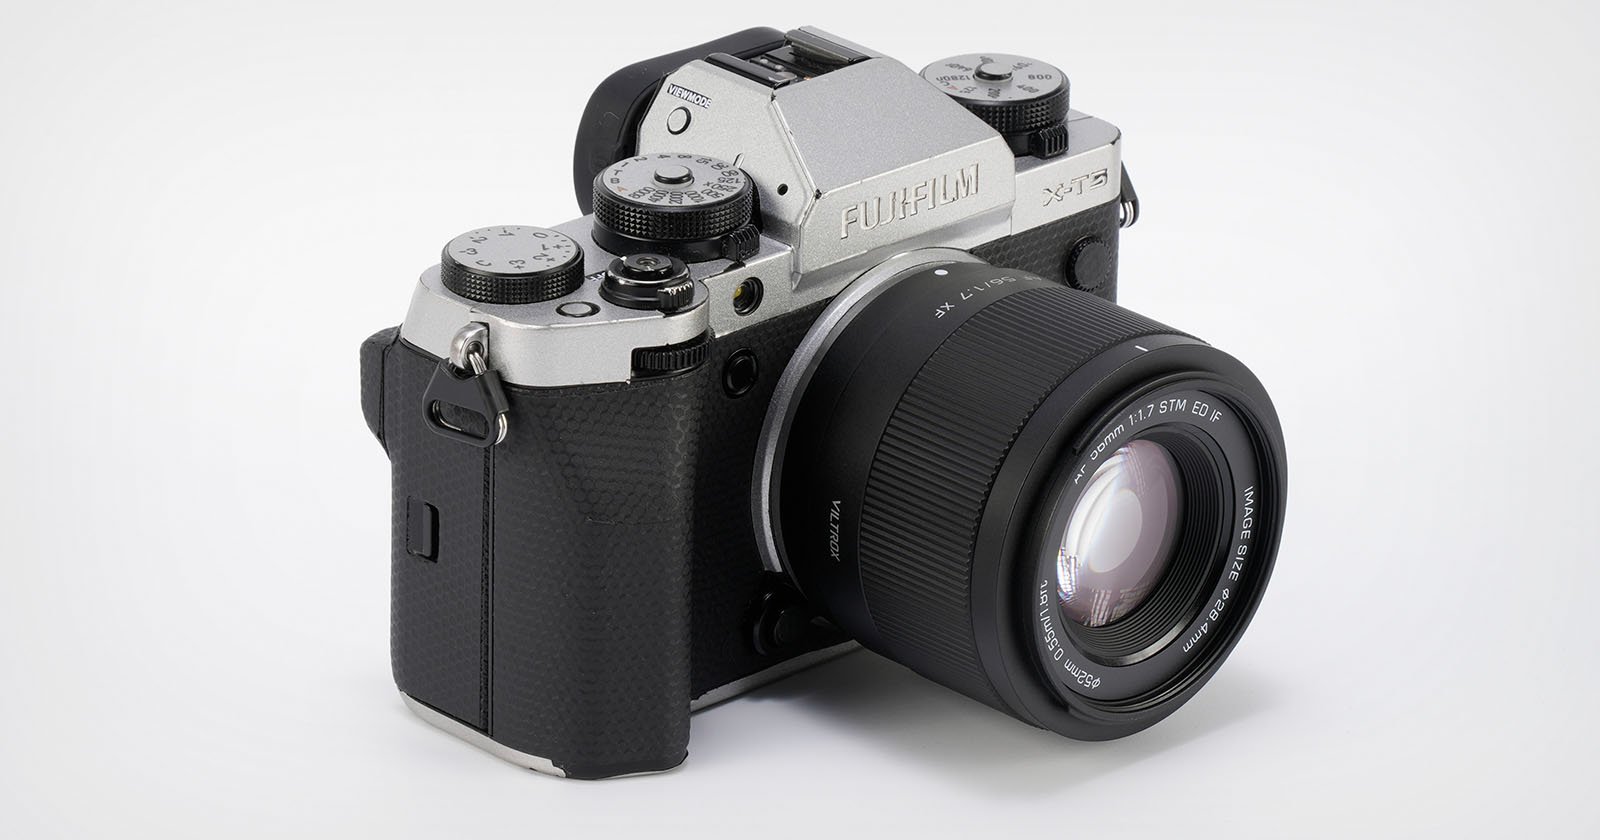 Viltrox announces AF 56mm f/1.7 portrait prime lens for APS-C mirrorless cameras